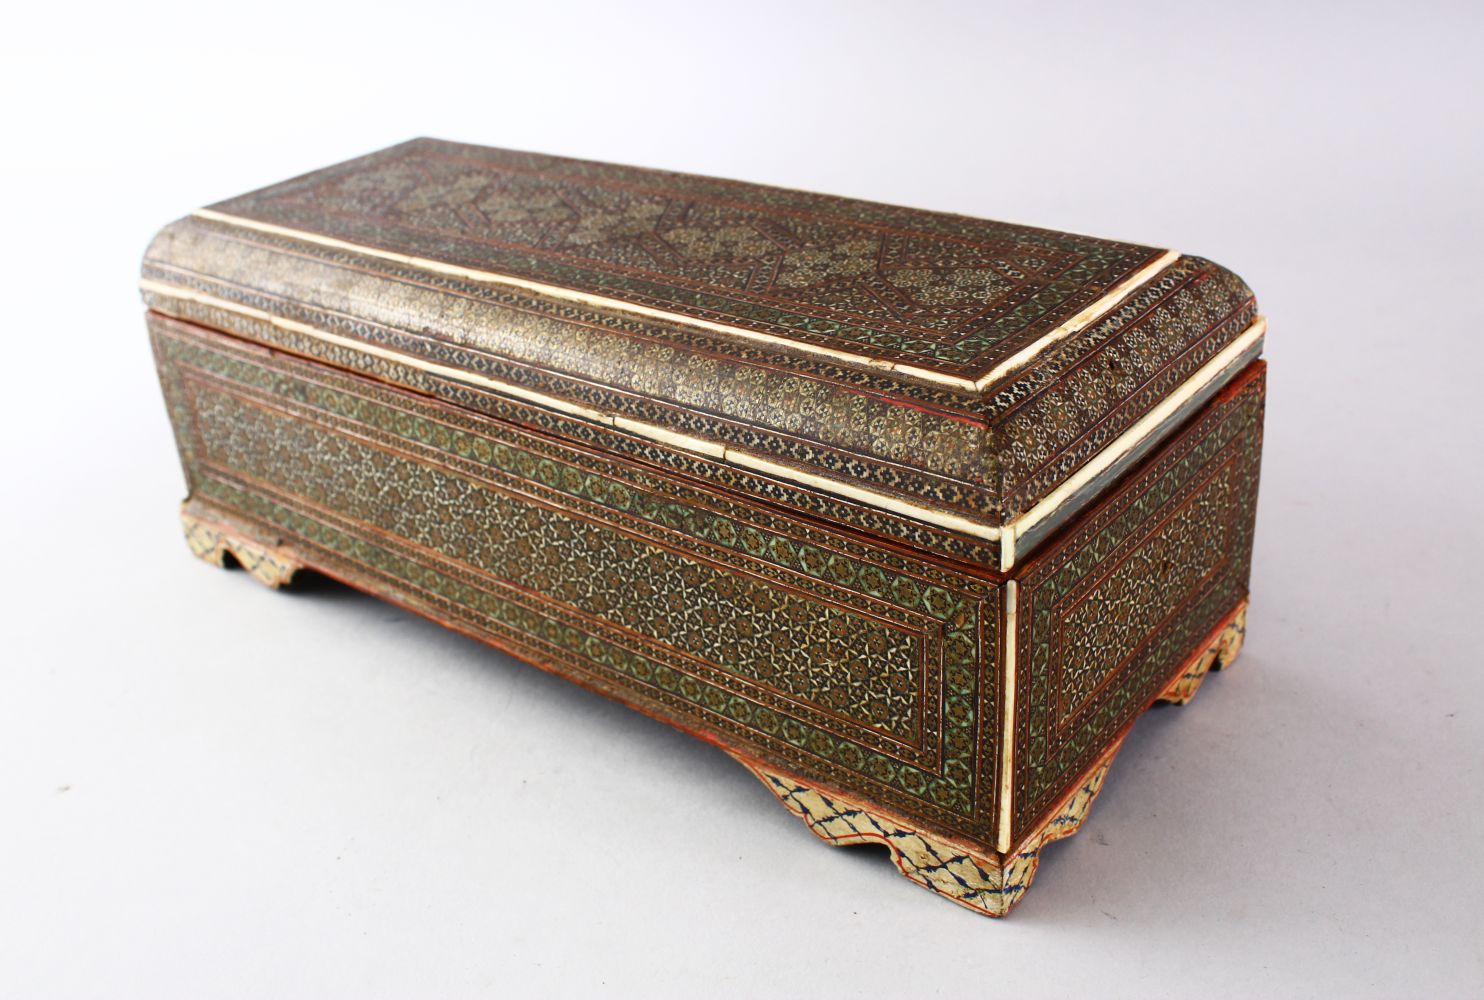 A FINE 19TH CENTURY PERSIAN QAJAR MOSAIC INLAID WOODEN LIDDED BOX, 11.5cm high X 29cm wide X 12cm